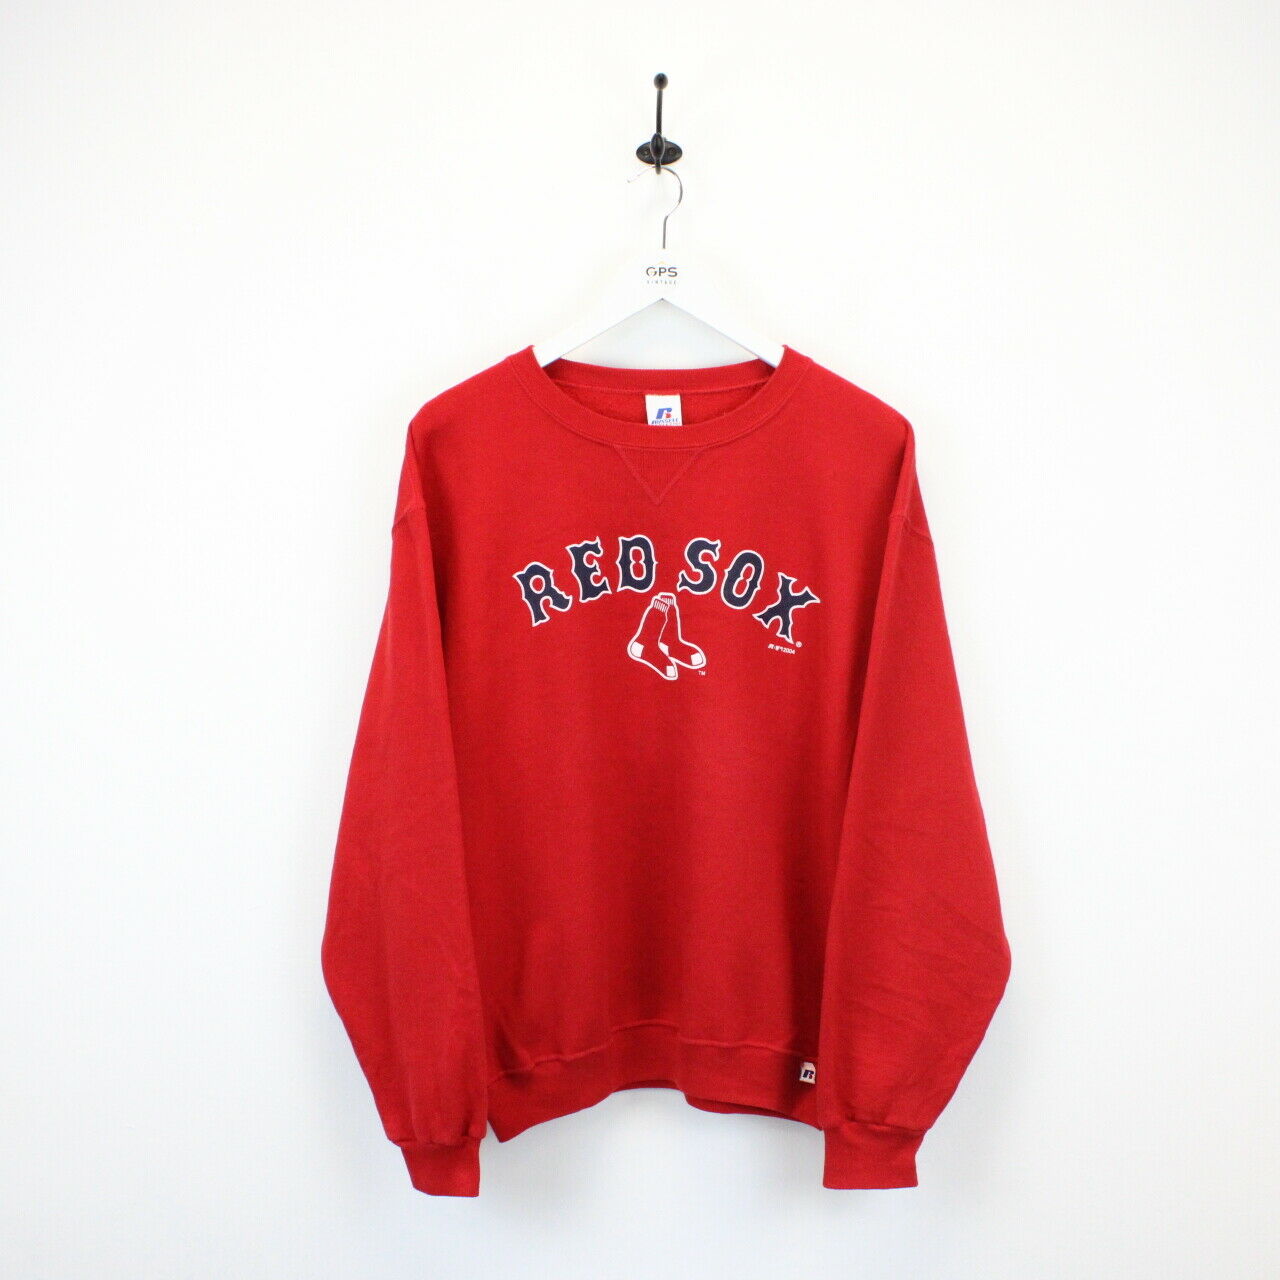 Vintage Boston Red Sox EST 1901 Sweatshirt / T-Shirt, Boston Red Sox  Crewneck Sweatshirt, Boston Baseball Shirt, Retro R